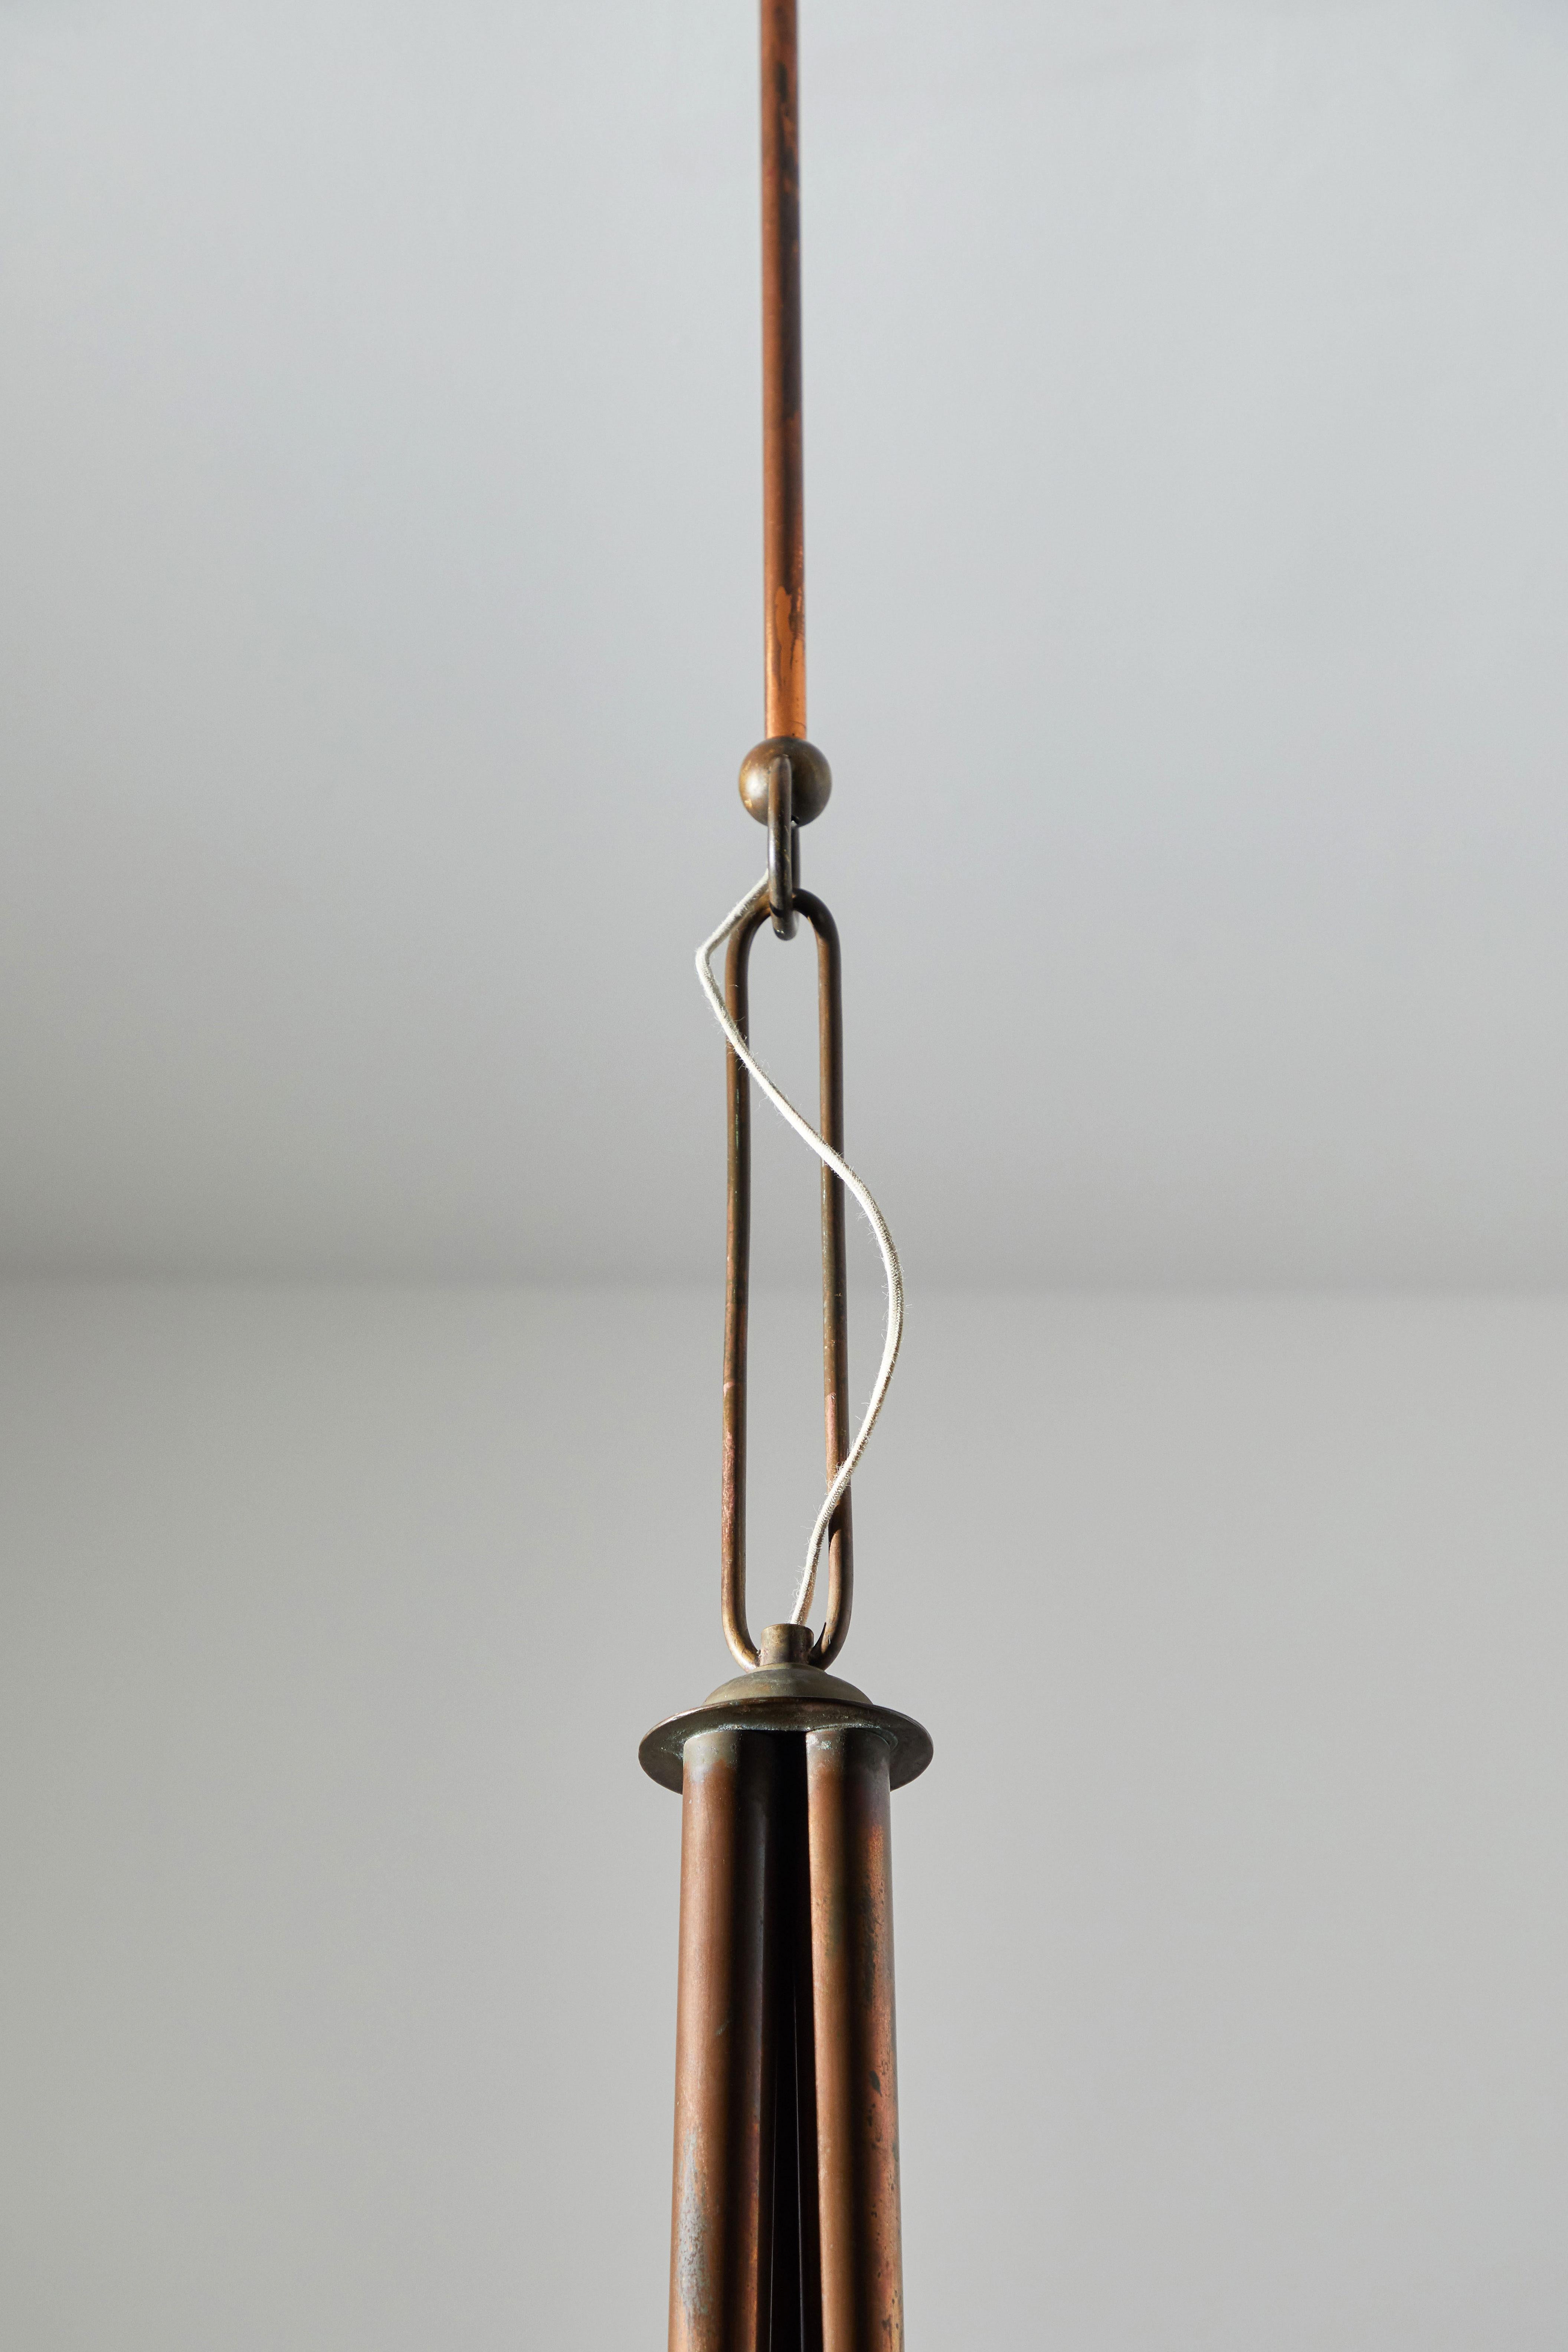 Copper Pendant Attributed to Guglielmo Ulrich